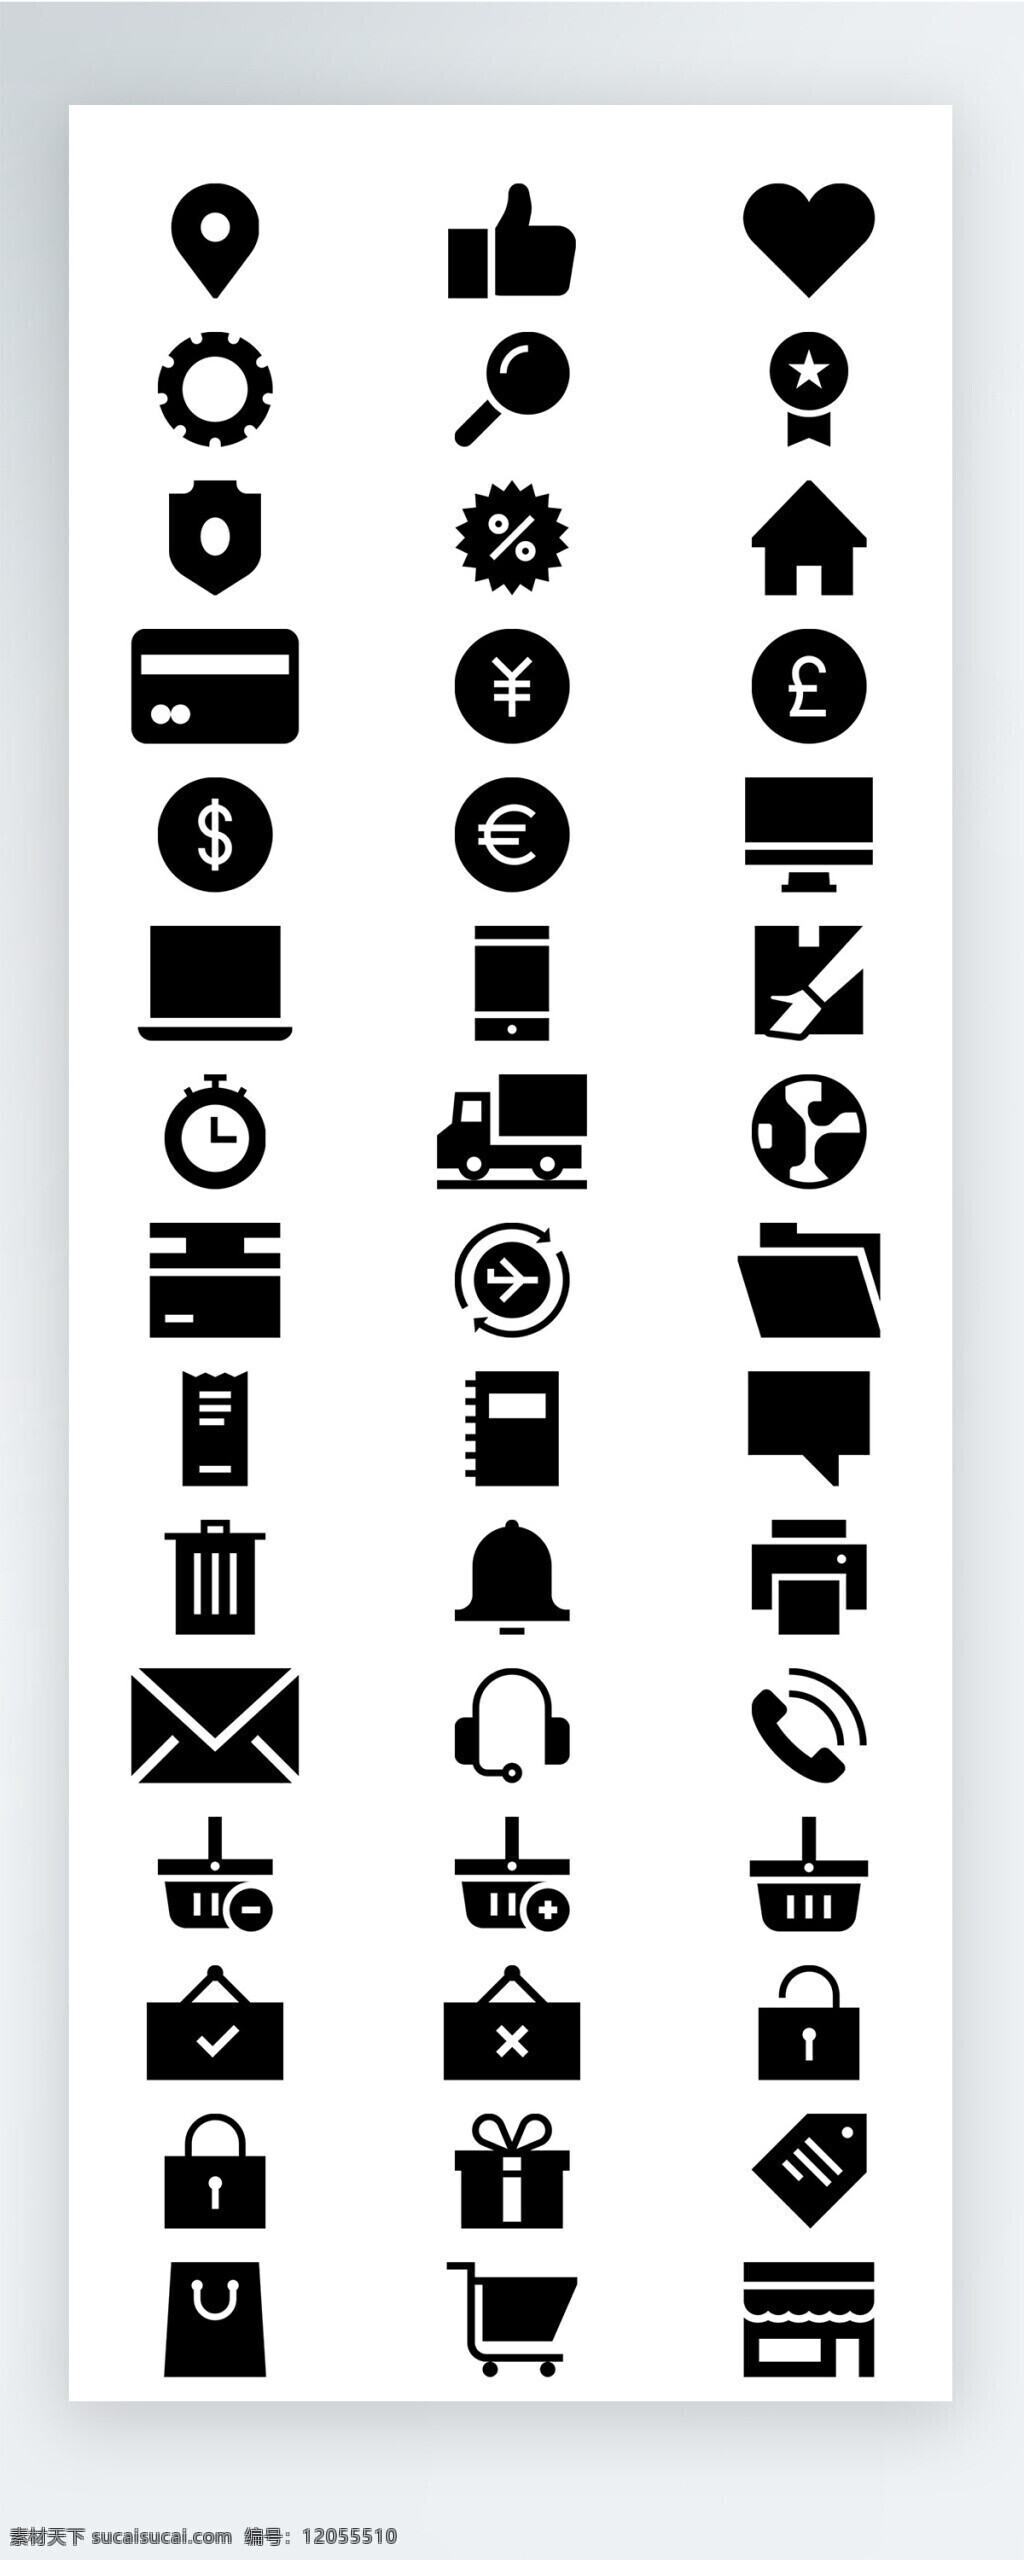 黑色 工作 生活 图标 矢量 icon icon图标 ui 手机 拟物 社交 交通 载具 购物 工具 安保 娱乐 休闲